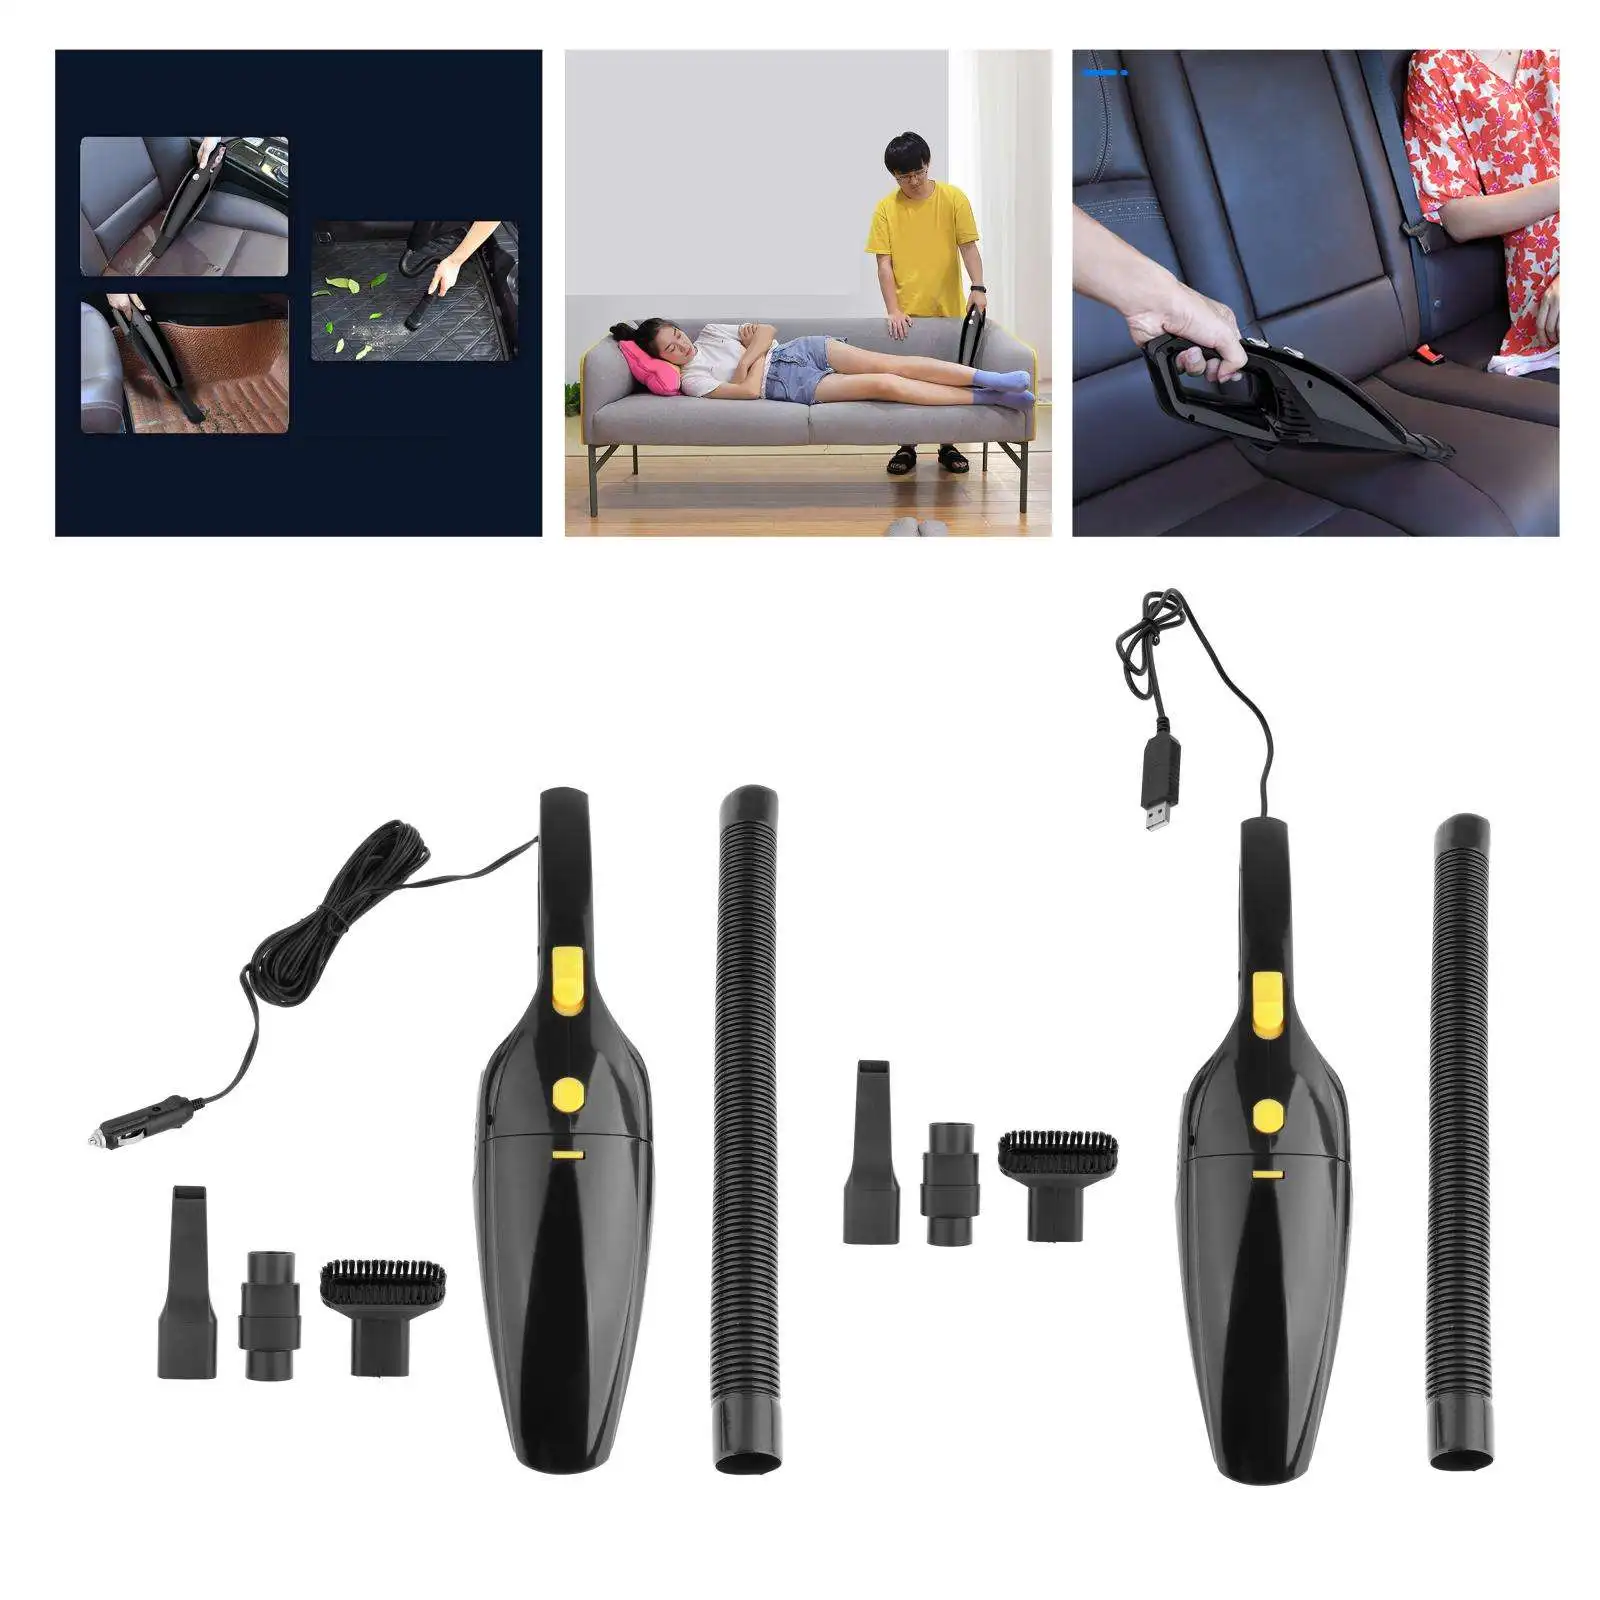 Home Handheld Cordless Vacuum Cleaner 120W 6000pa, Car Inflator Pump, Dual-Purpose Dry Wet